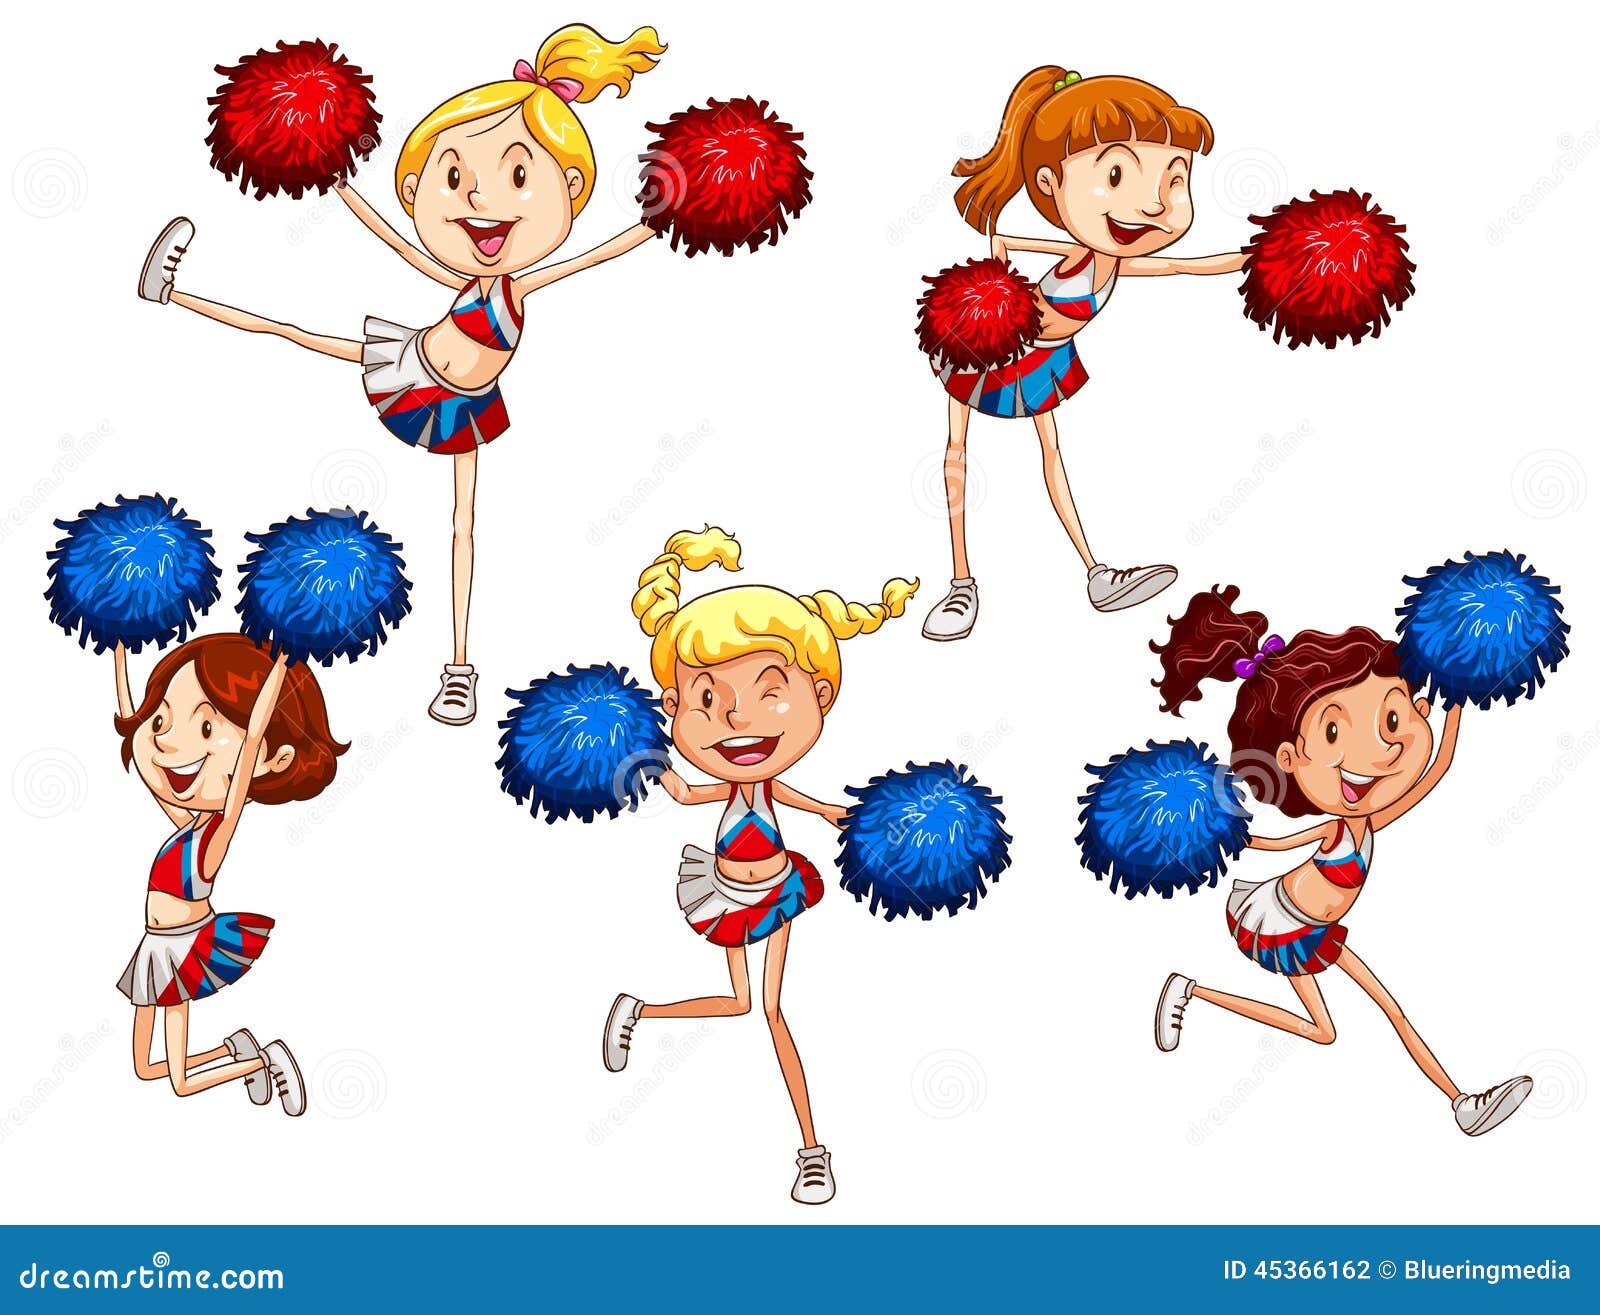 Cheerleaders Stock Vector - Image: 45366162